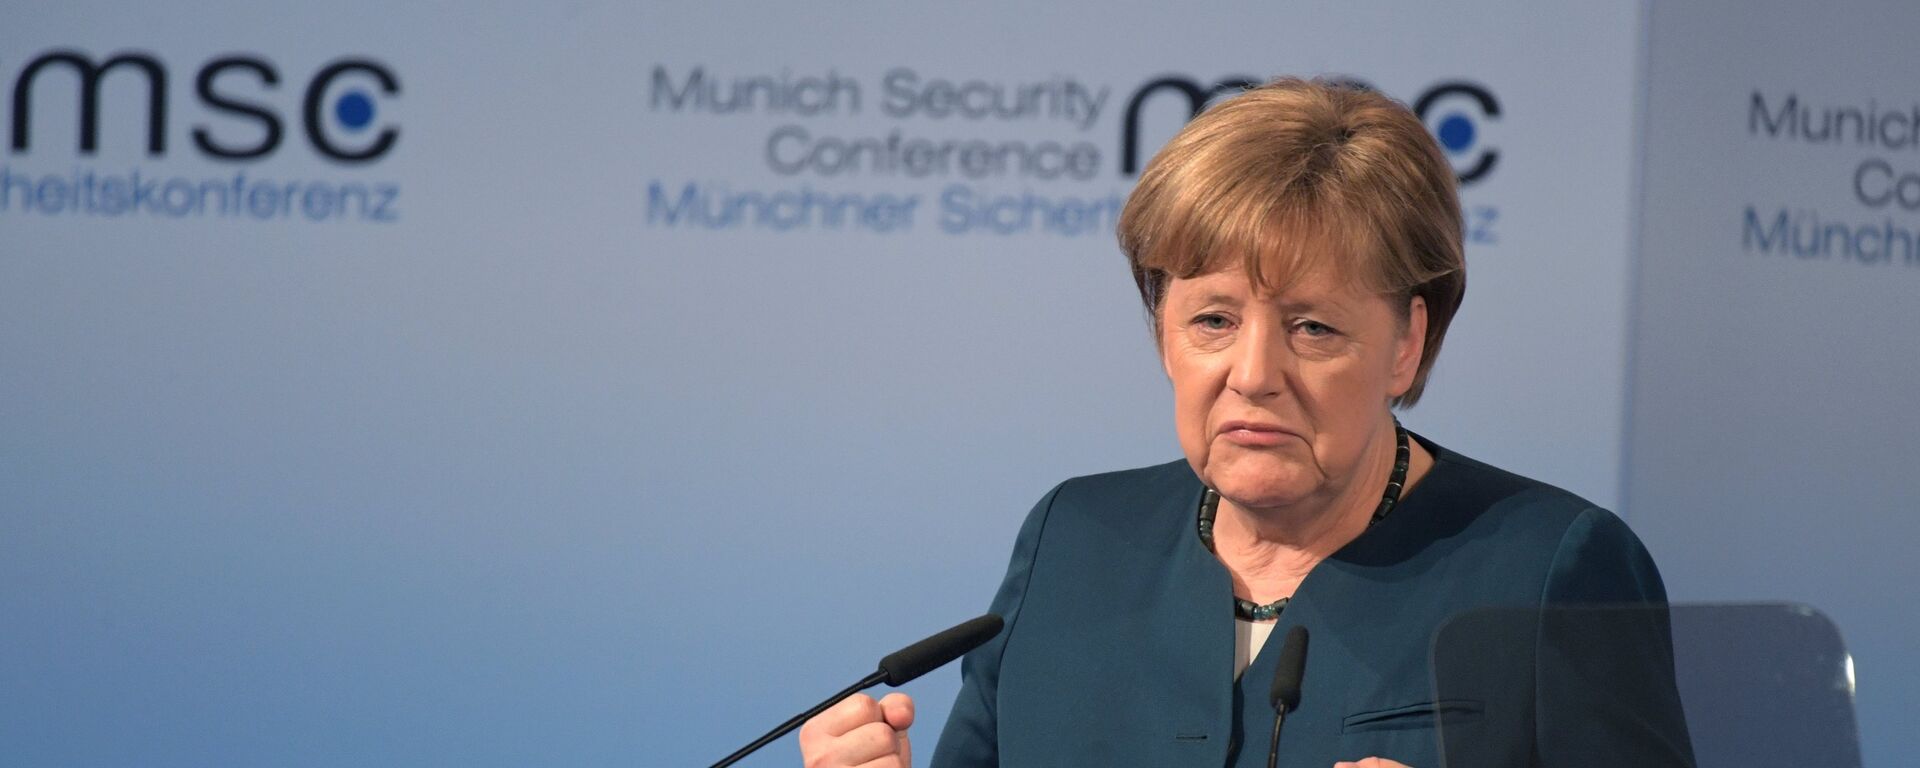 Канцлер ФРГ Ангела Меркель выступает на 53-й Мюнхенской конференции по безопасности - Sputnik Латвия, 1920, 10.05.2018